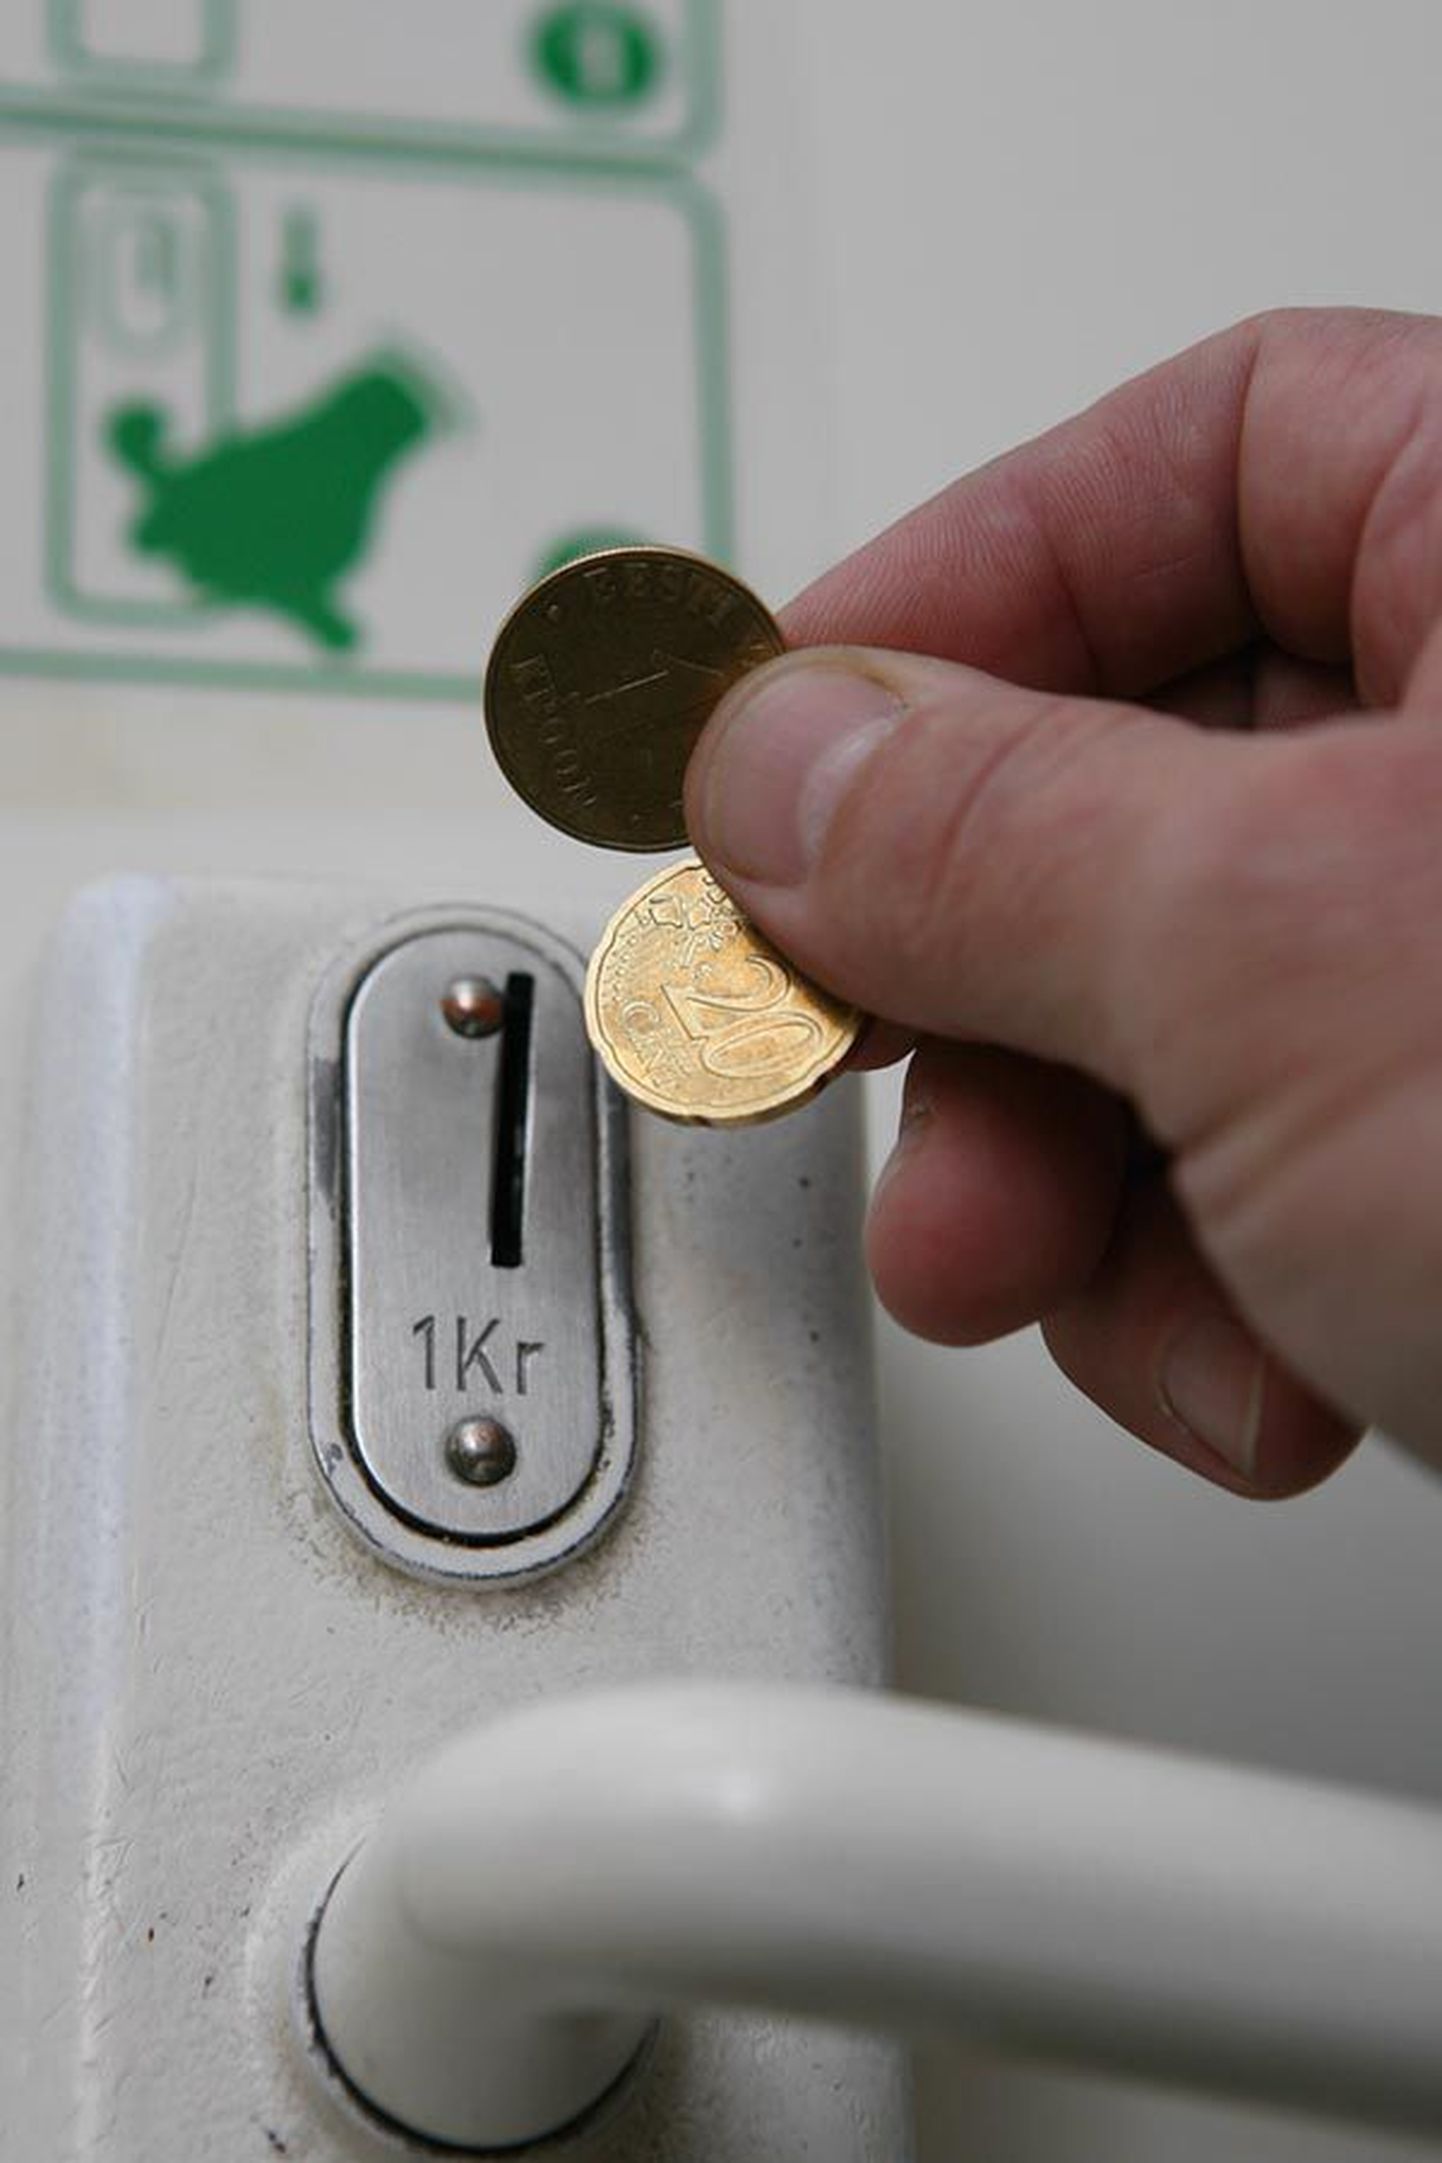 Kui osa ettevõtteid püüab kasutada euro tulekut hinnatõusu maskeerimiseks, siis mõnda sunnib rahareform hinda kergitama vastu tahtmist. Näiteks Centrumi tasulises WC-s käimise eest tuleb uuel aastal senise krooni asemel maksta üle kolme korra rohkem, sest 20 eurosendist väiksemat münti ei tunne seade ära.